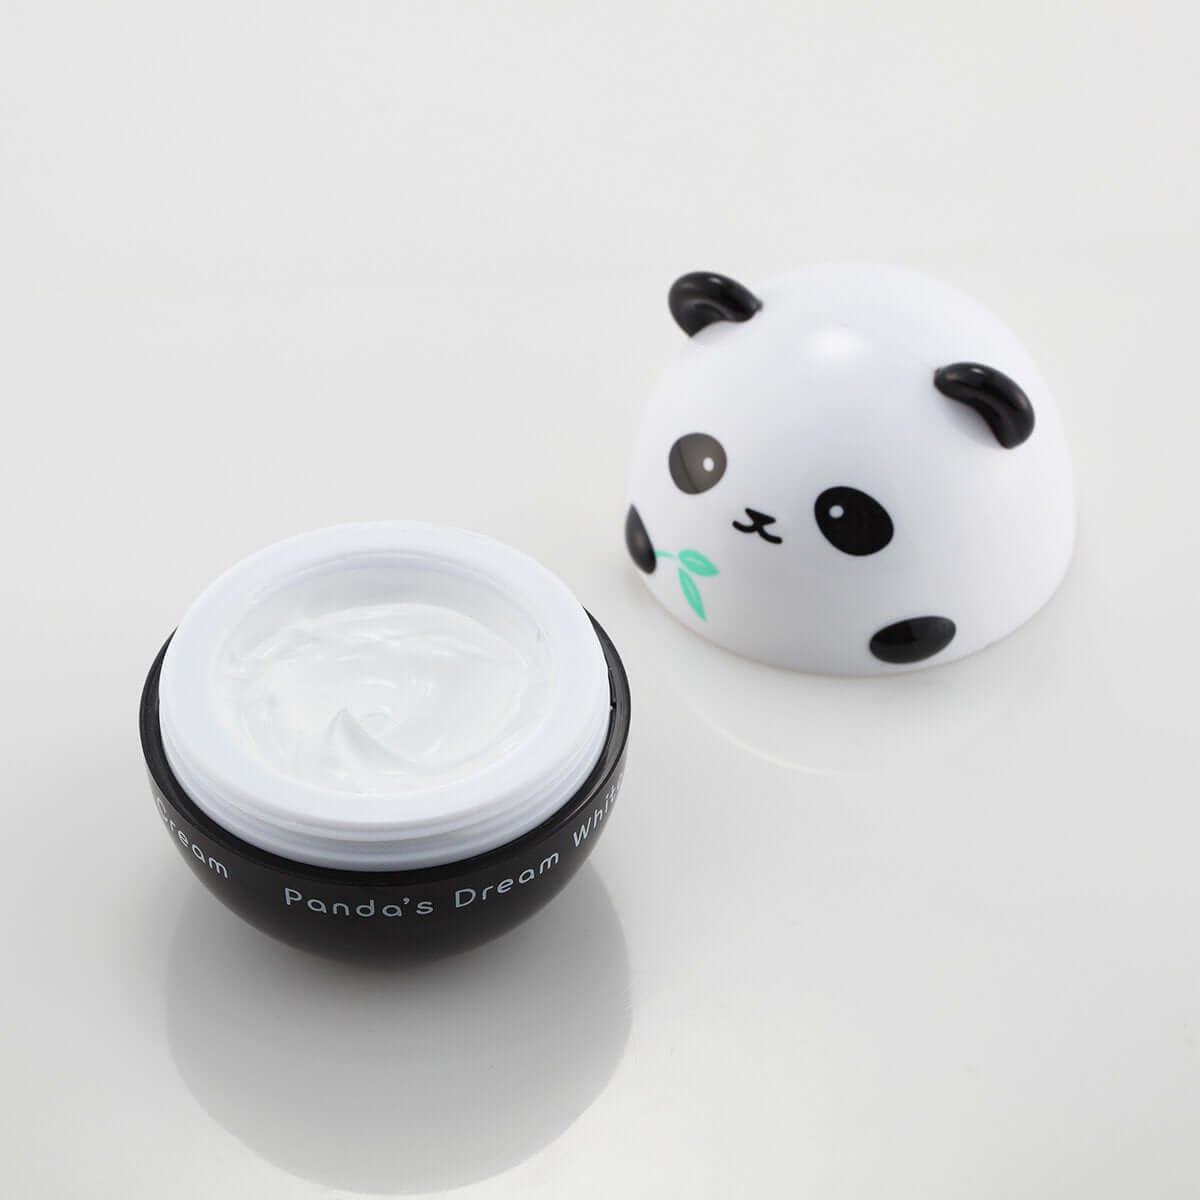 TONYMOLY Panda's Dream White Hand Cream from Tony Moly